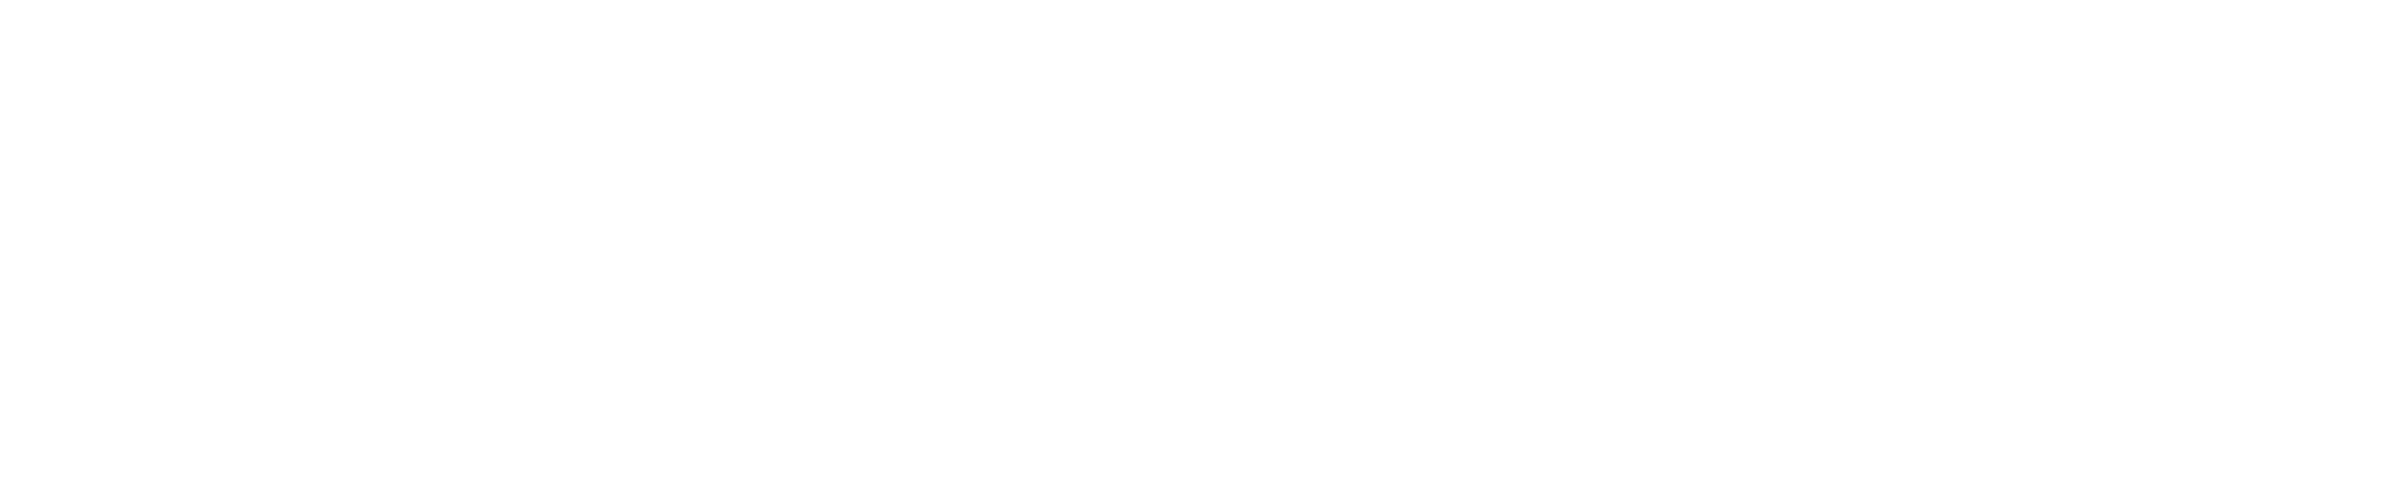 高崎市のキャバクラ「GUEST」のロゴ